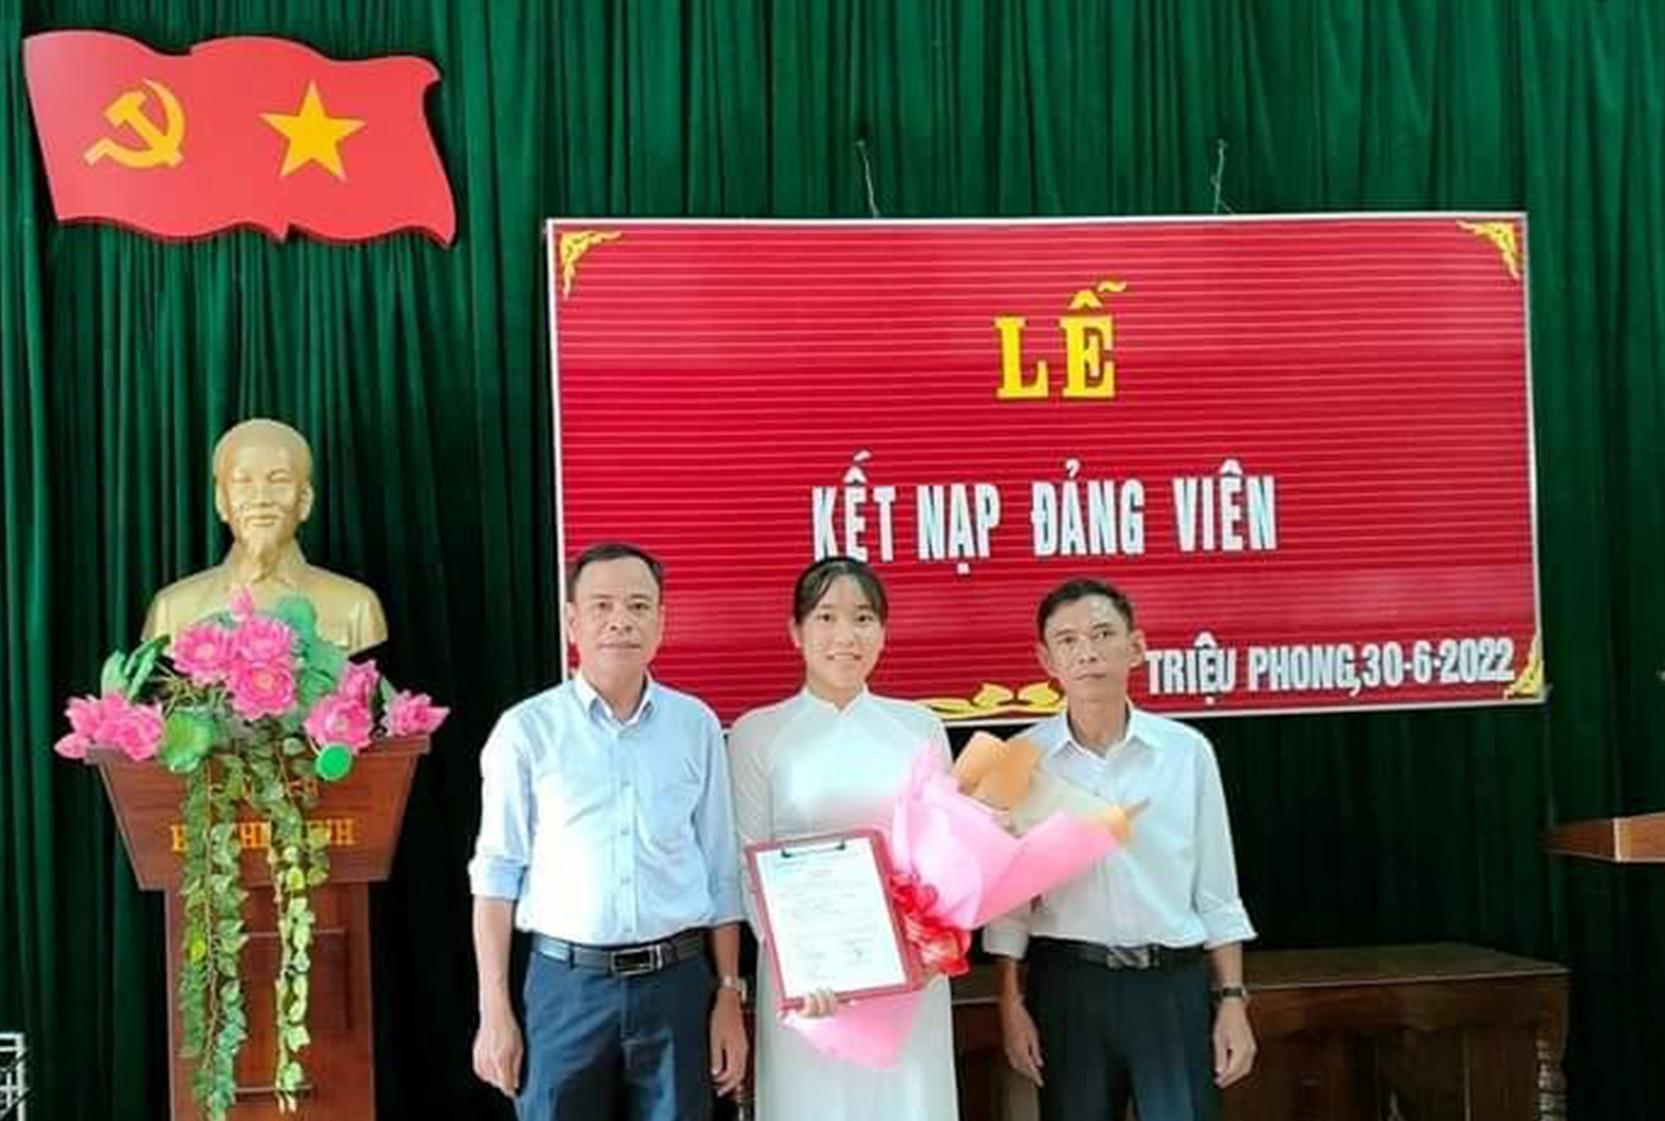 Phan Tình Nhi (học sinh lớp 12B1, Trường THPT Triệu Phong, huyện Triệu Phong) vinh dự được đứng vào hàng ngũ của Đảng khi vừa bước sang tuổi 18.